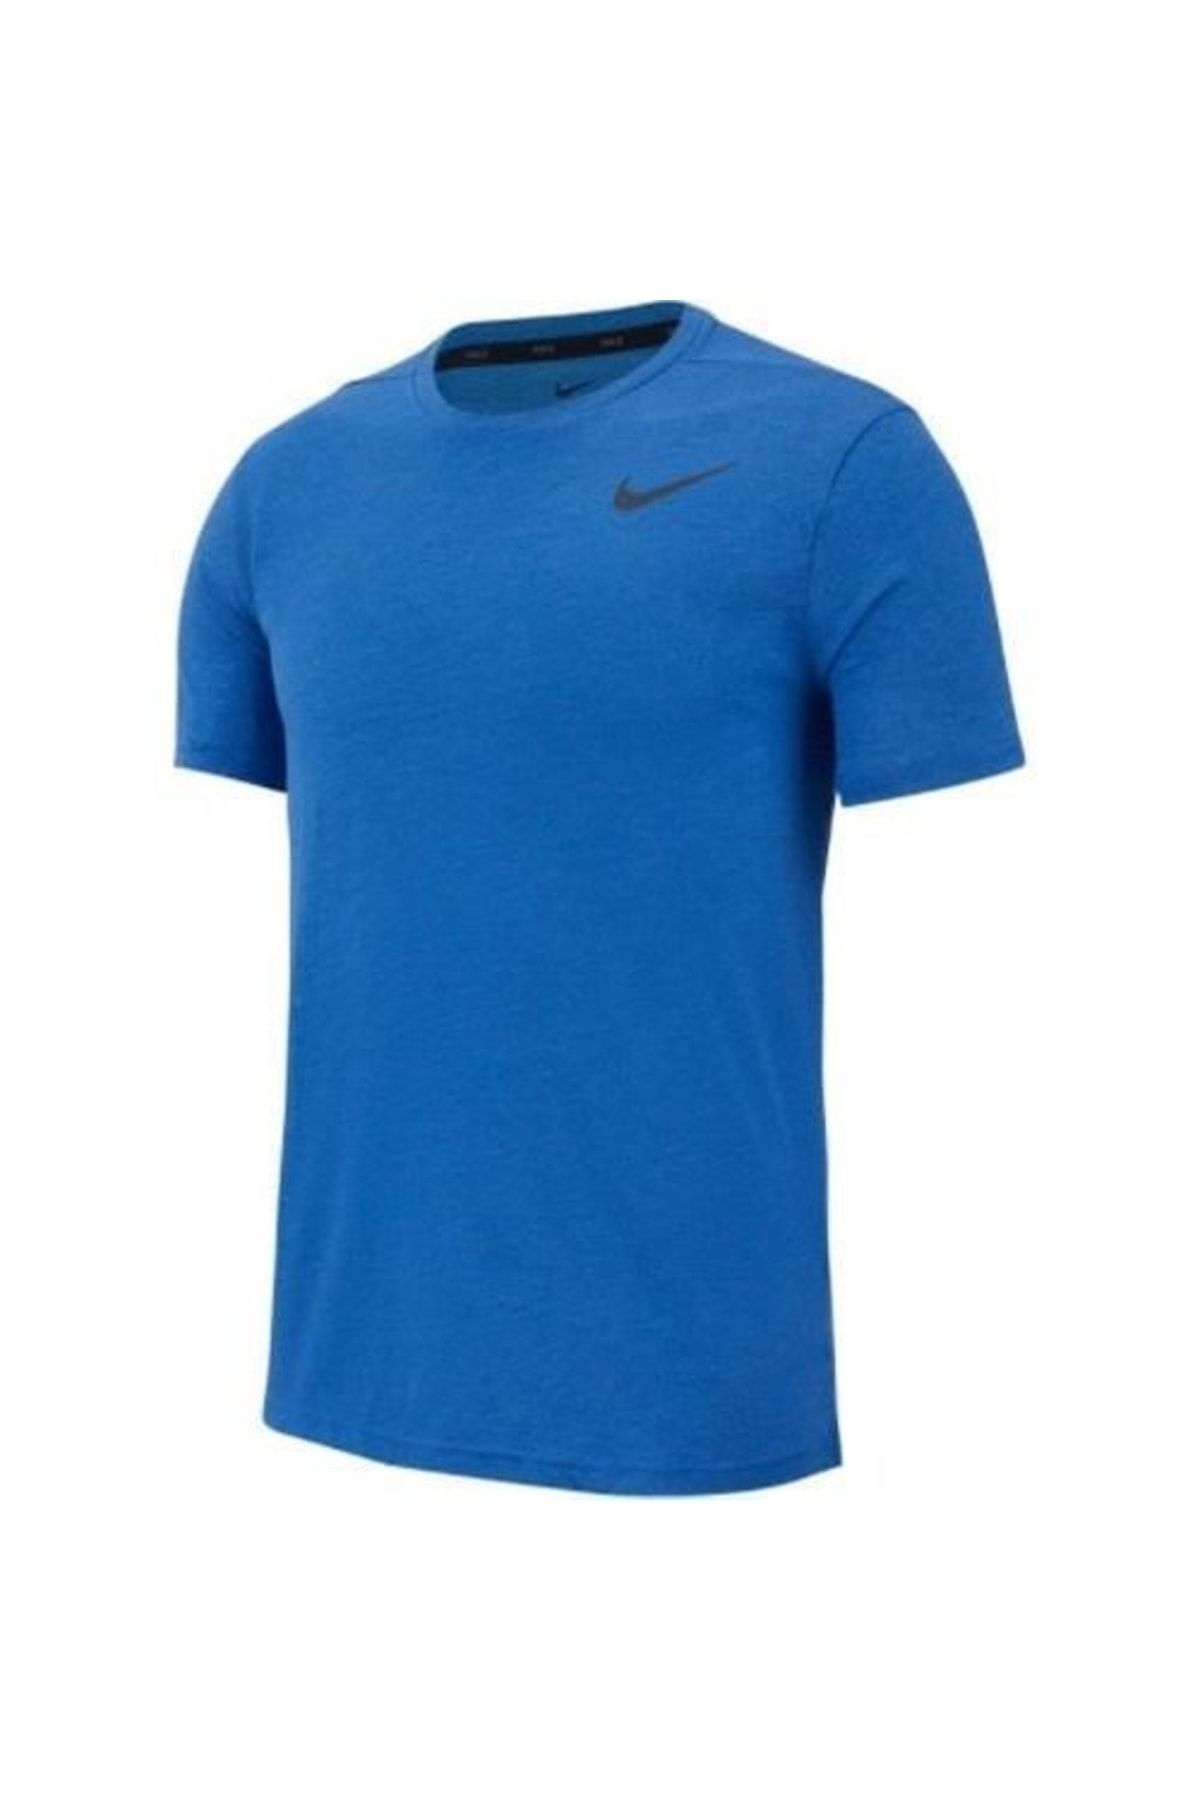 Nike Erkek T-Shirt Mk Brt Top Ss Hpr Dry Cn9811-456